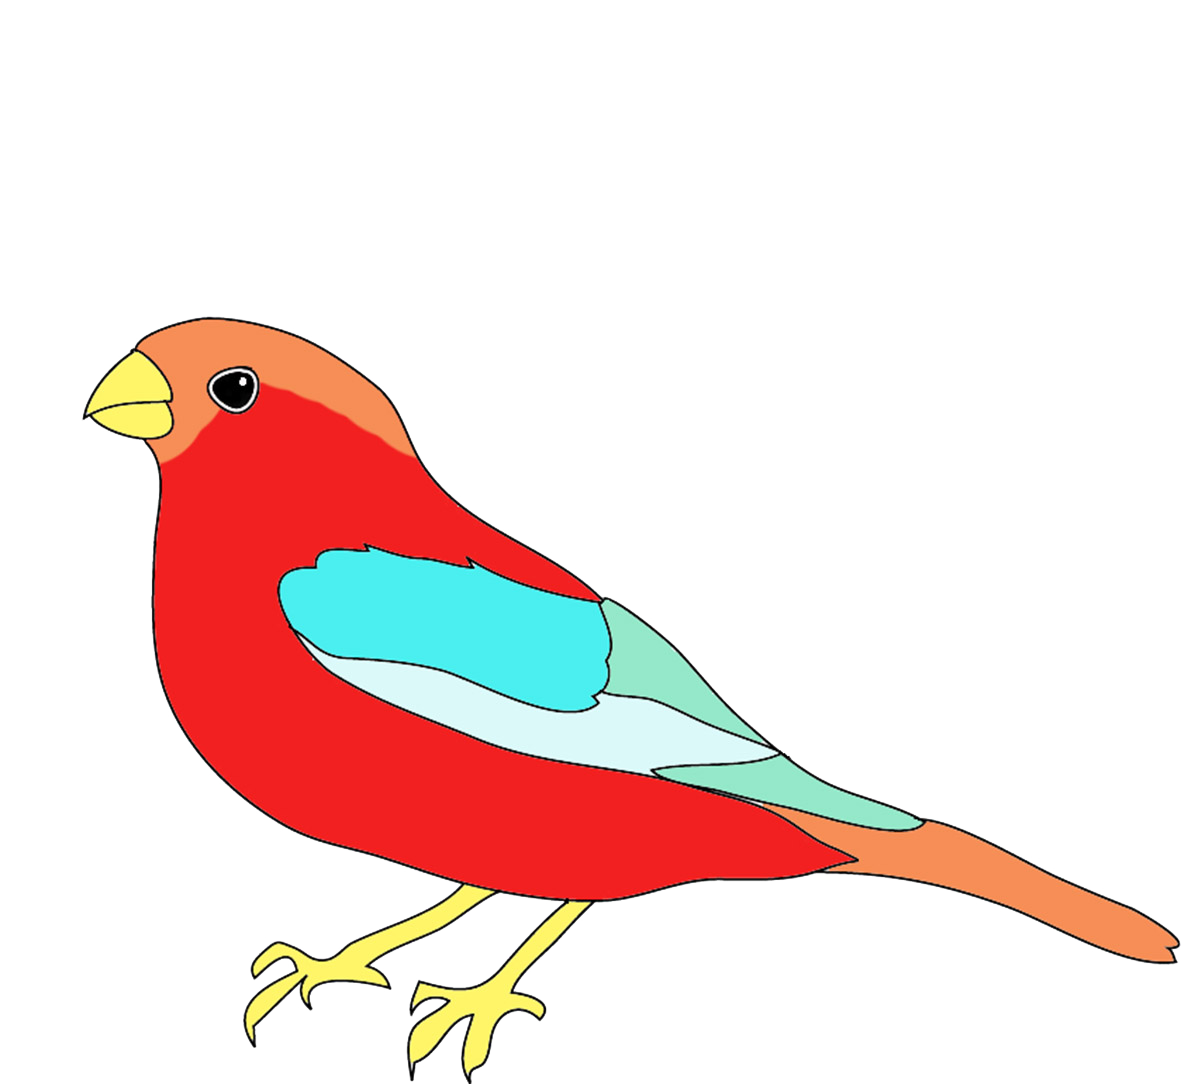 colour pencil sketches birds - Clip Art Library